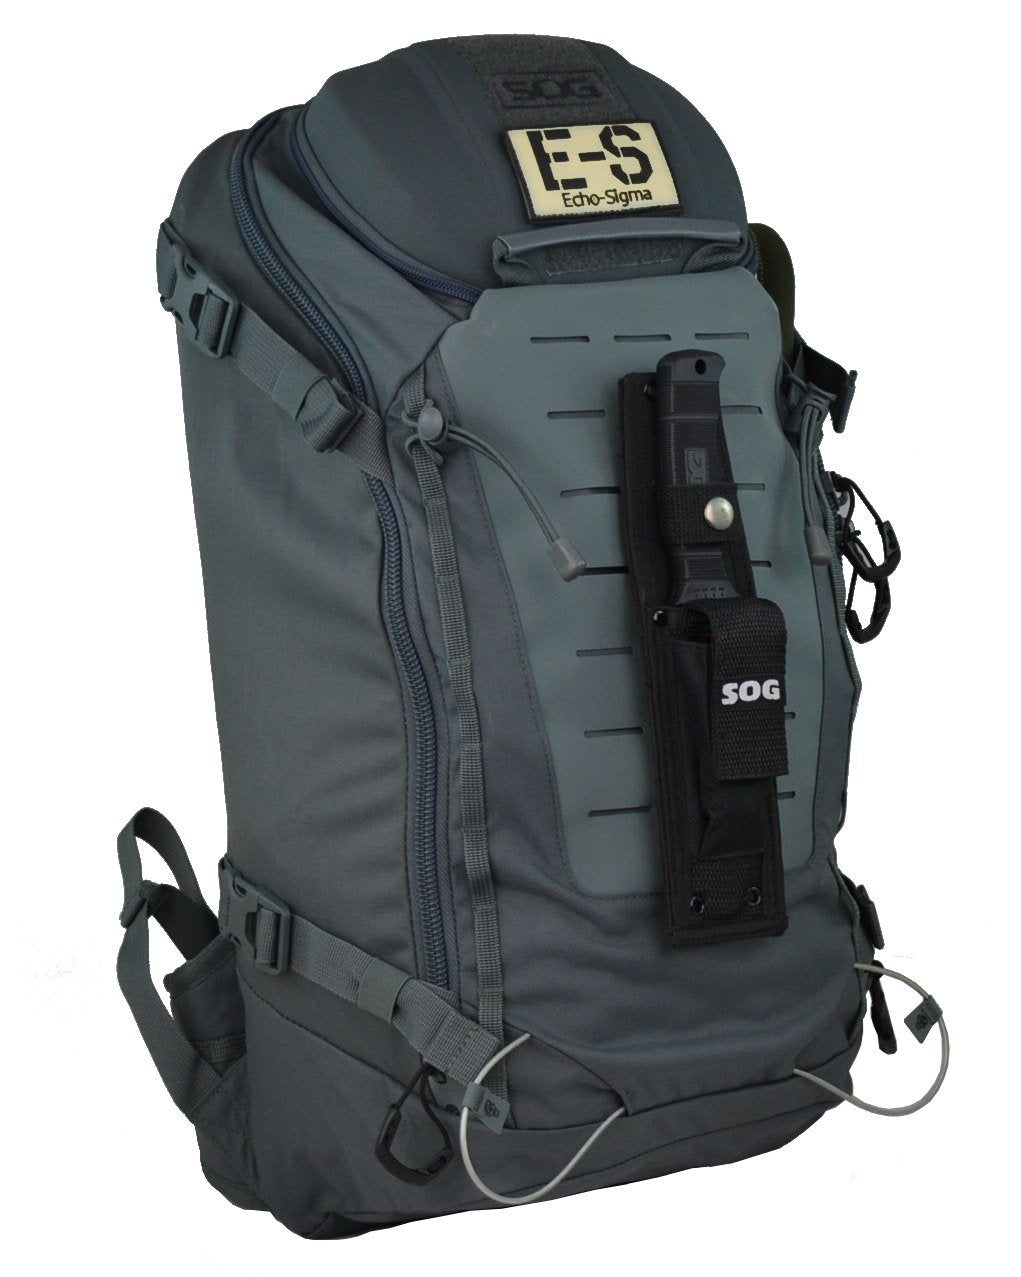 Echo-Sigma Get Home Bag: SOG Special Edition V2